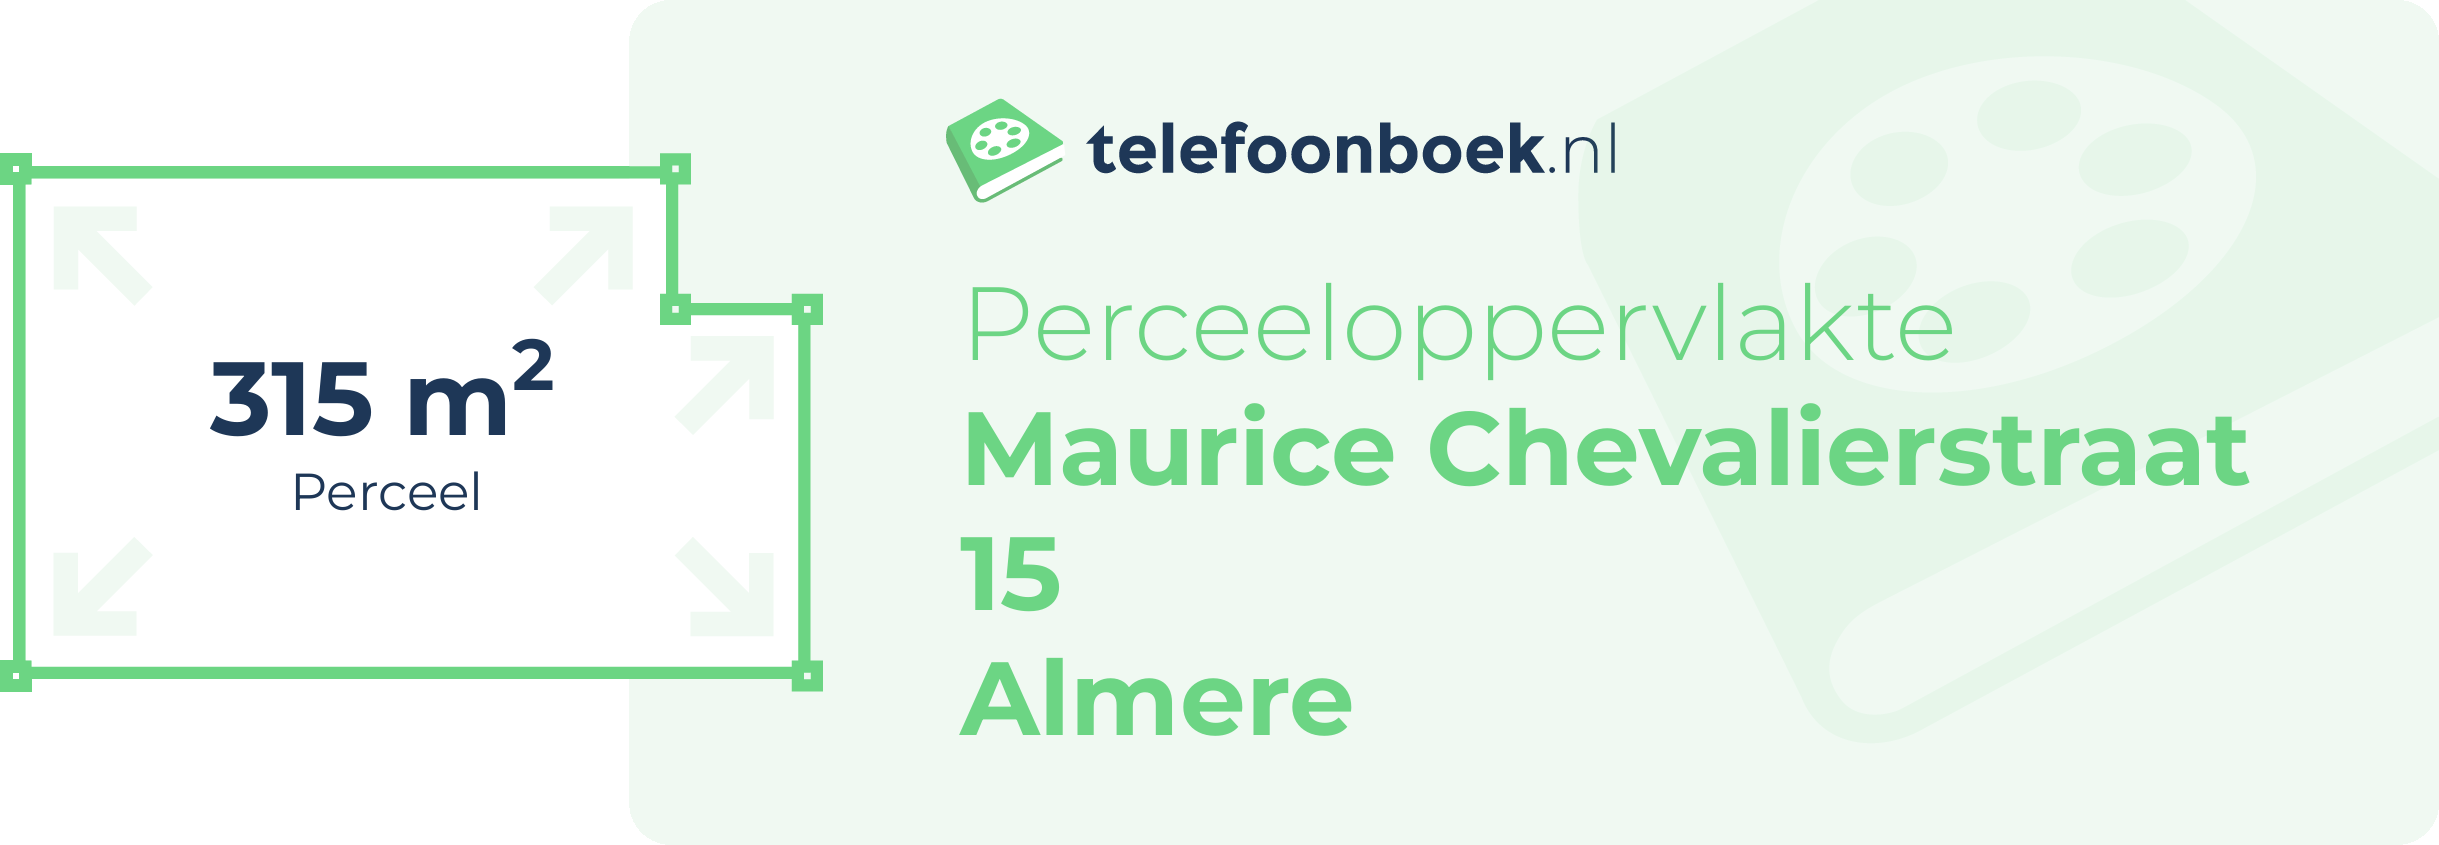 Perceeloppervlakte Maurice Chevalierstraat 15 Almere